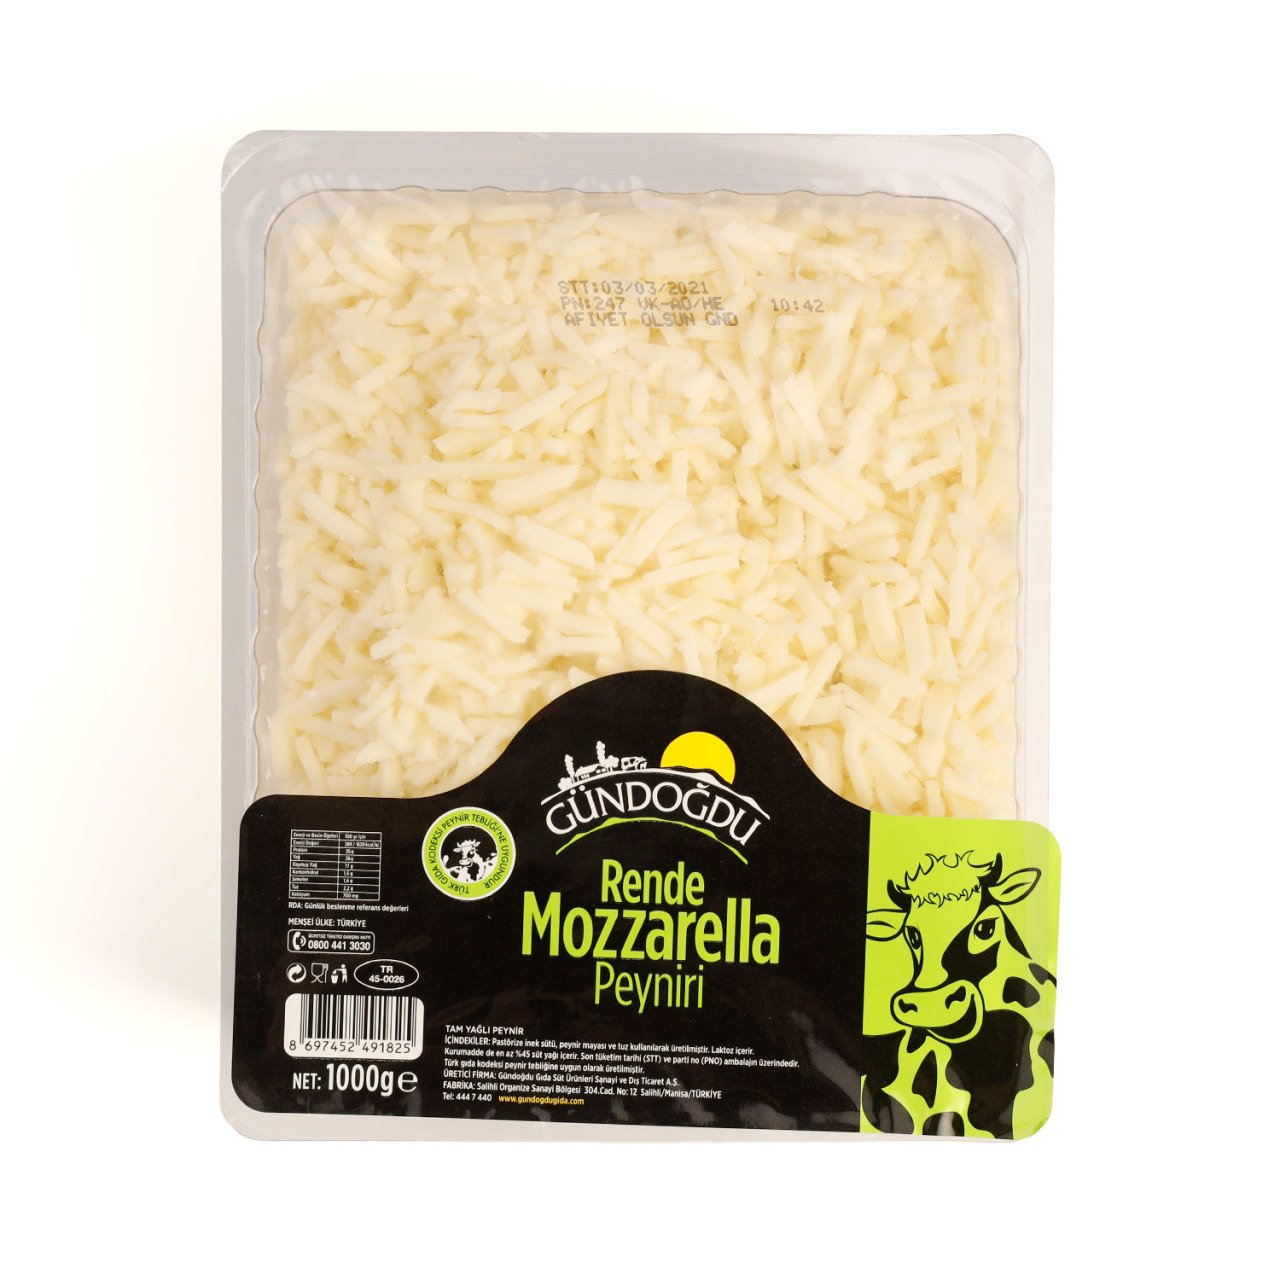 Gündoğdu Mozzarella Peyniri (Rende) 1000gr